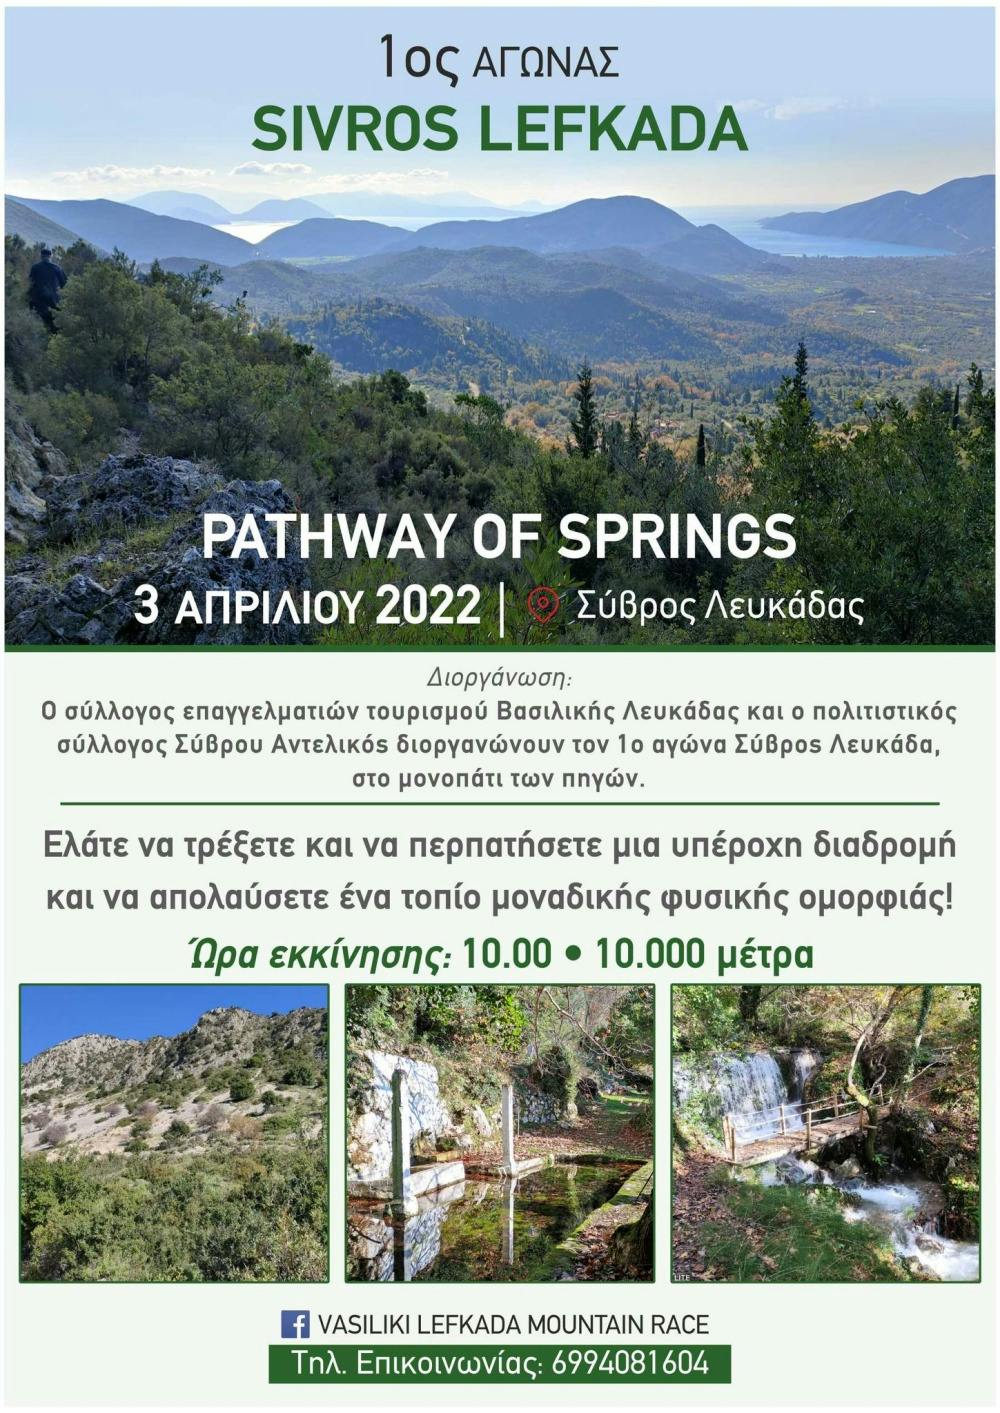 Προκηρύχθηκε για τις 3 Απριλίου ο 1ος Αγώνας Sivros Lefkada Pathway of Springs στον Σύβρο Λευκάδας runbeat.gr 